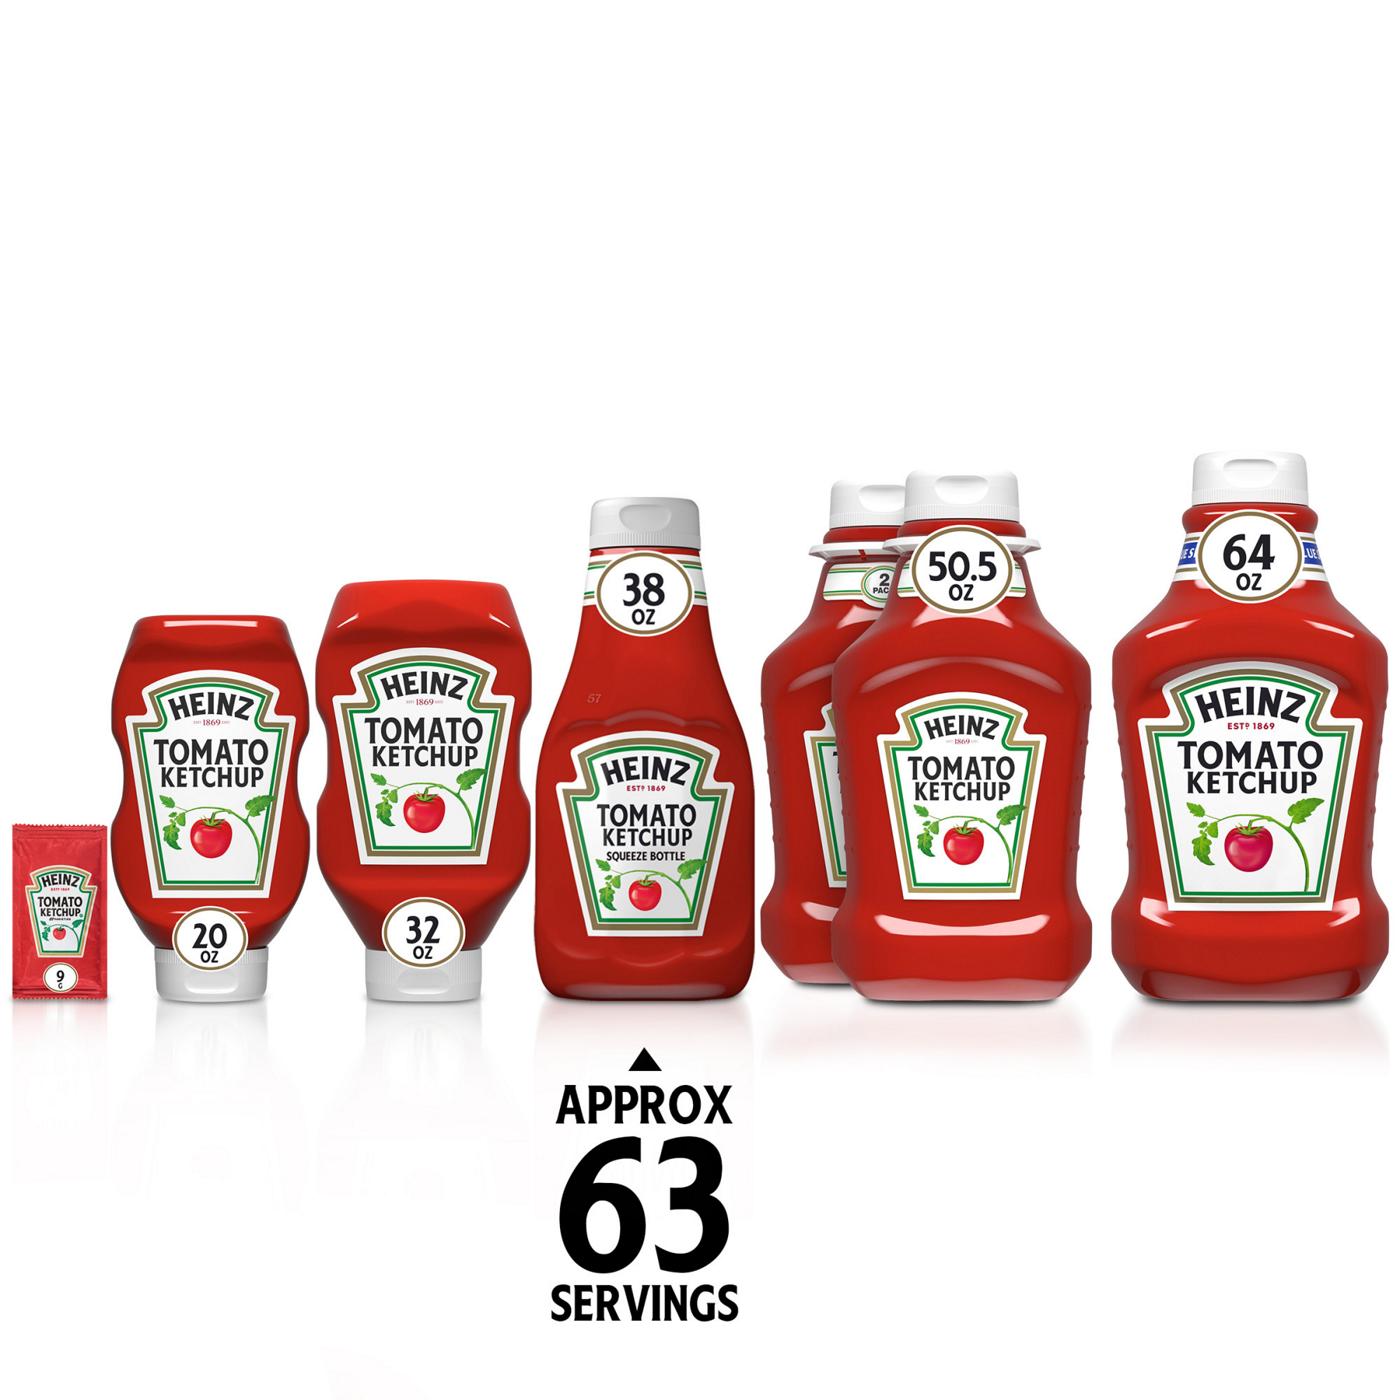 Heinz Tomato Ketchup; image 2 of 7